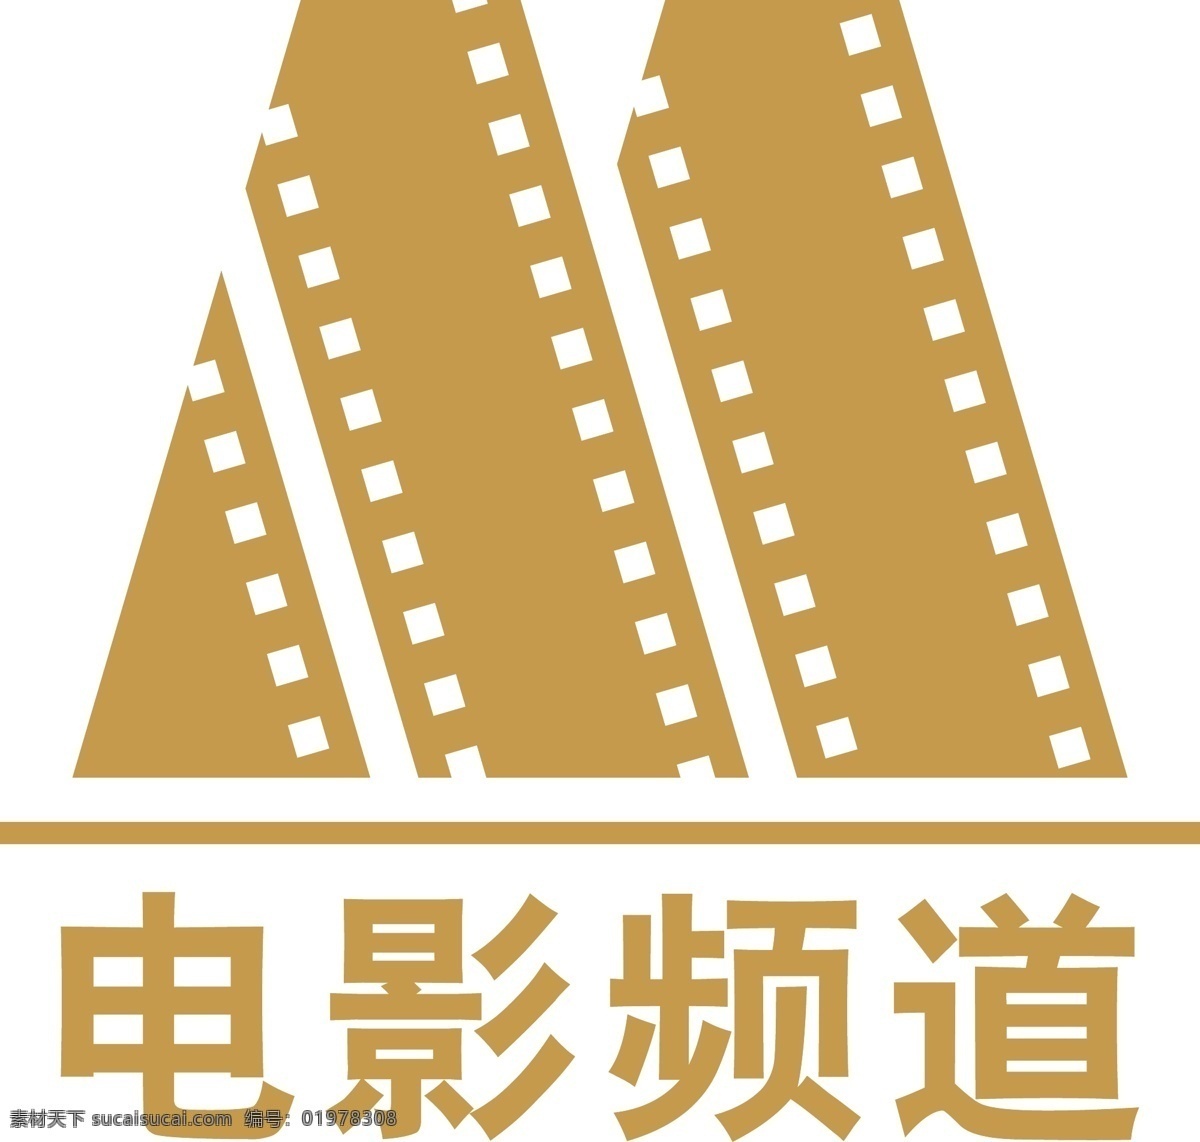 logo 标识标志图标 企业 标志 电影频道 矢量 模板下载 psd源文件 logo设计